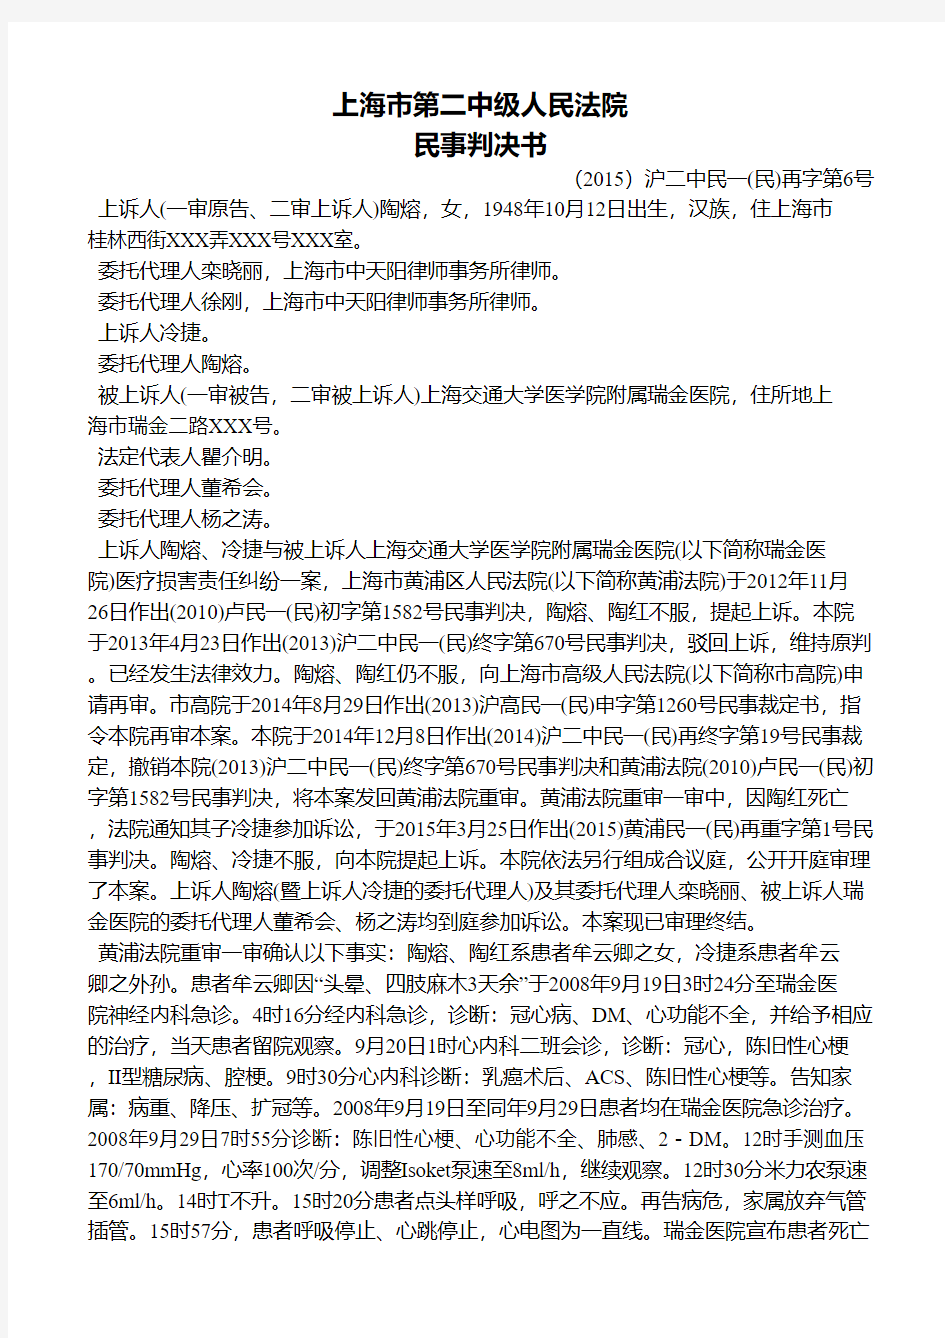 上海市第二中级人民法院民事判决书